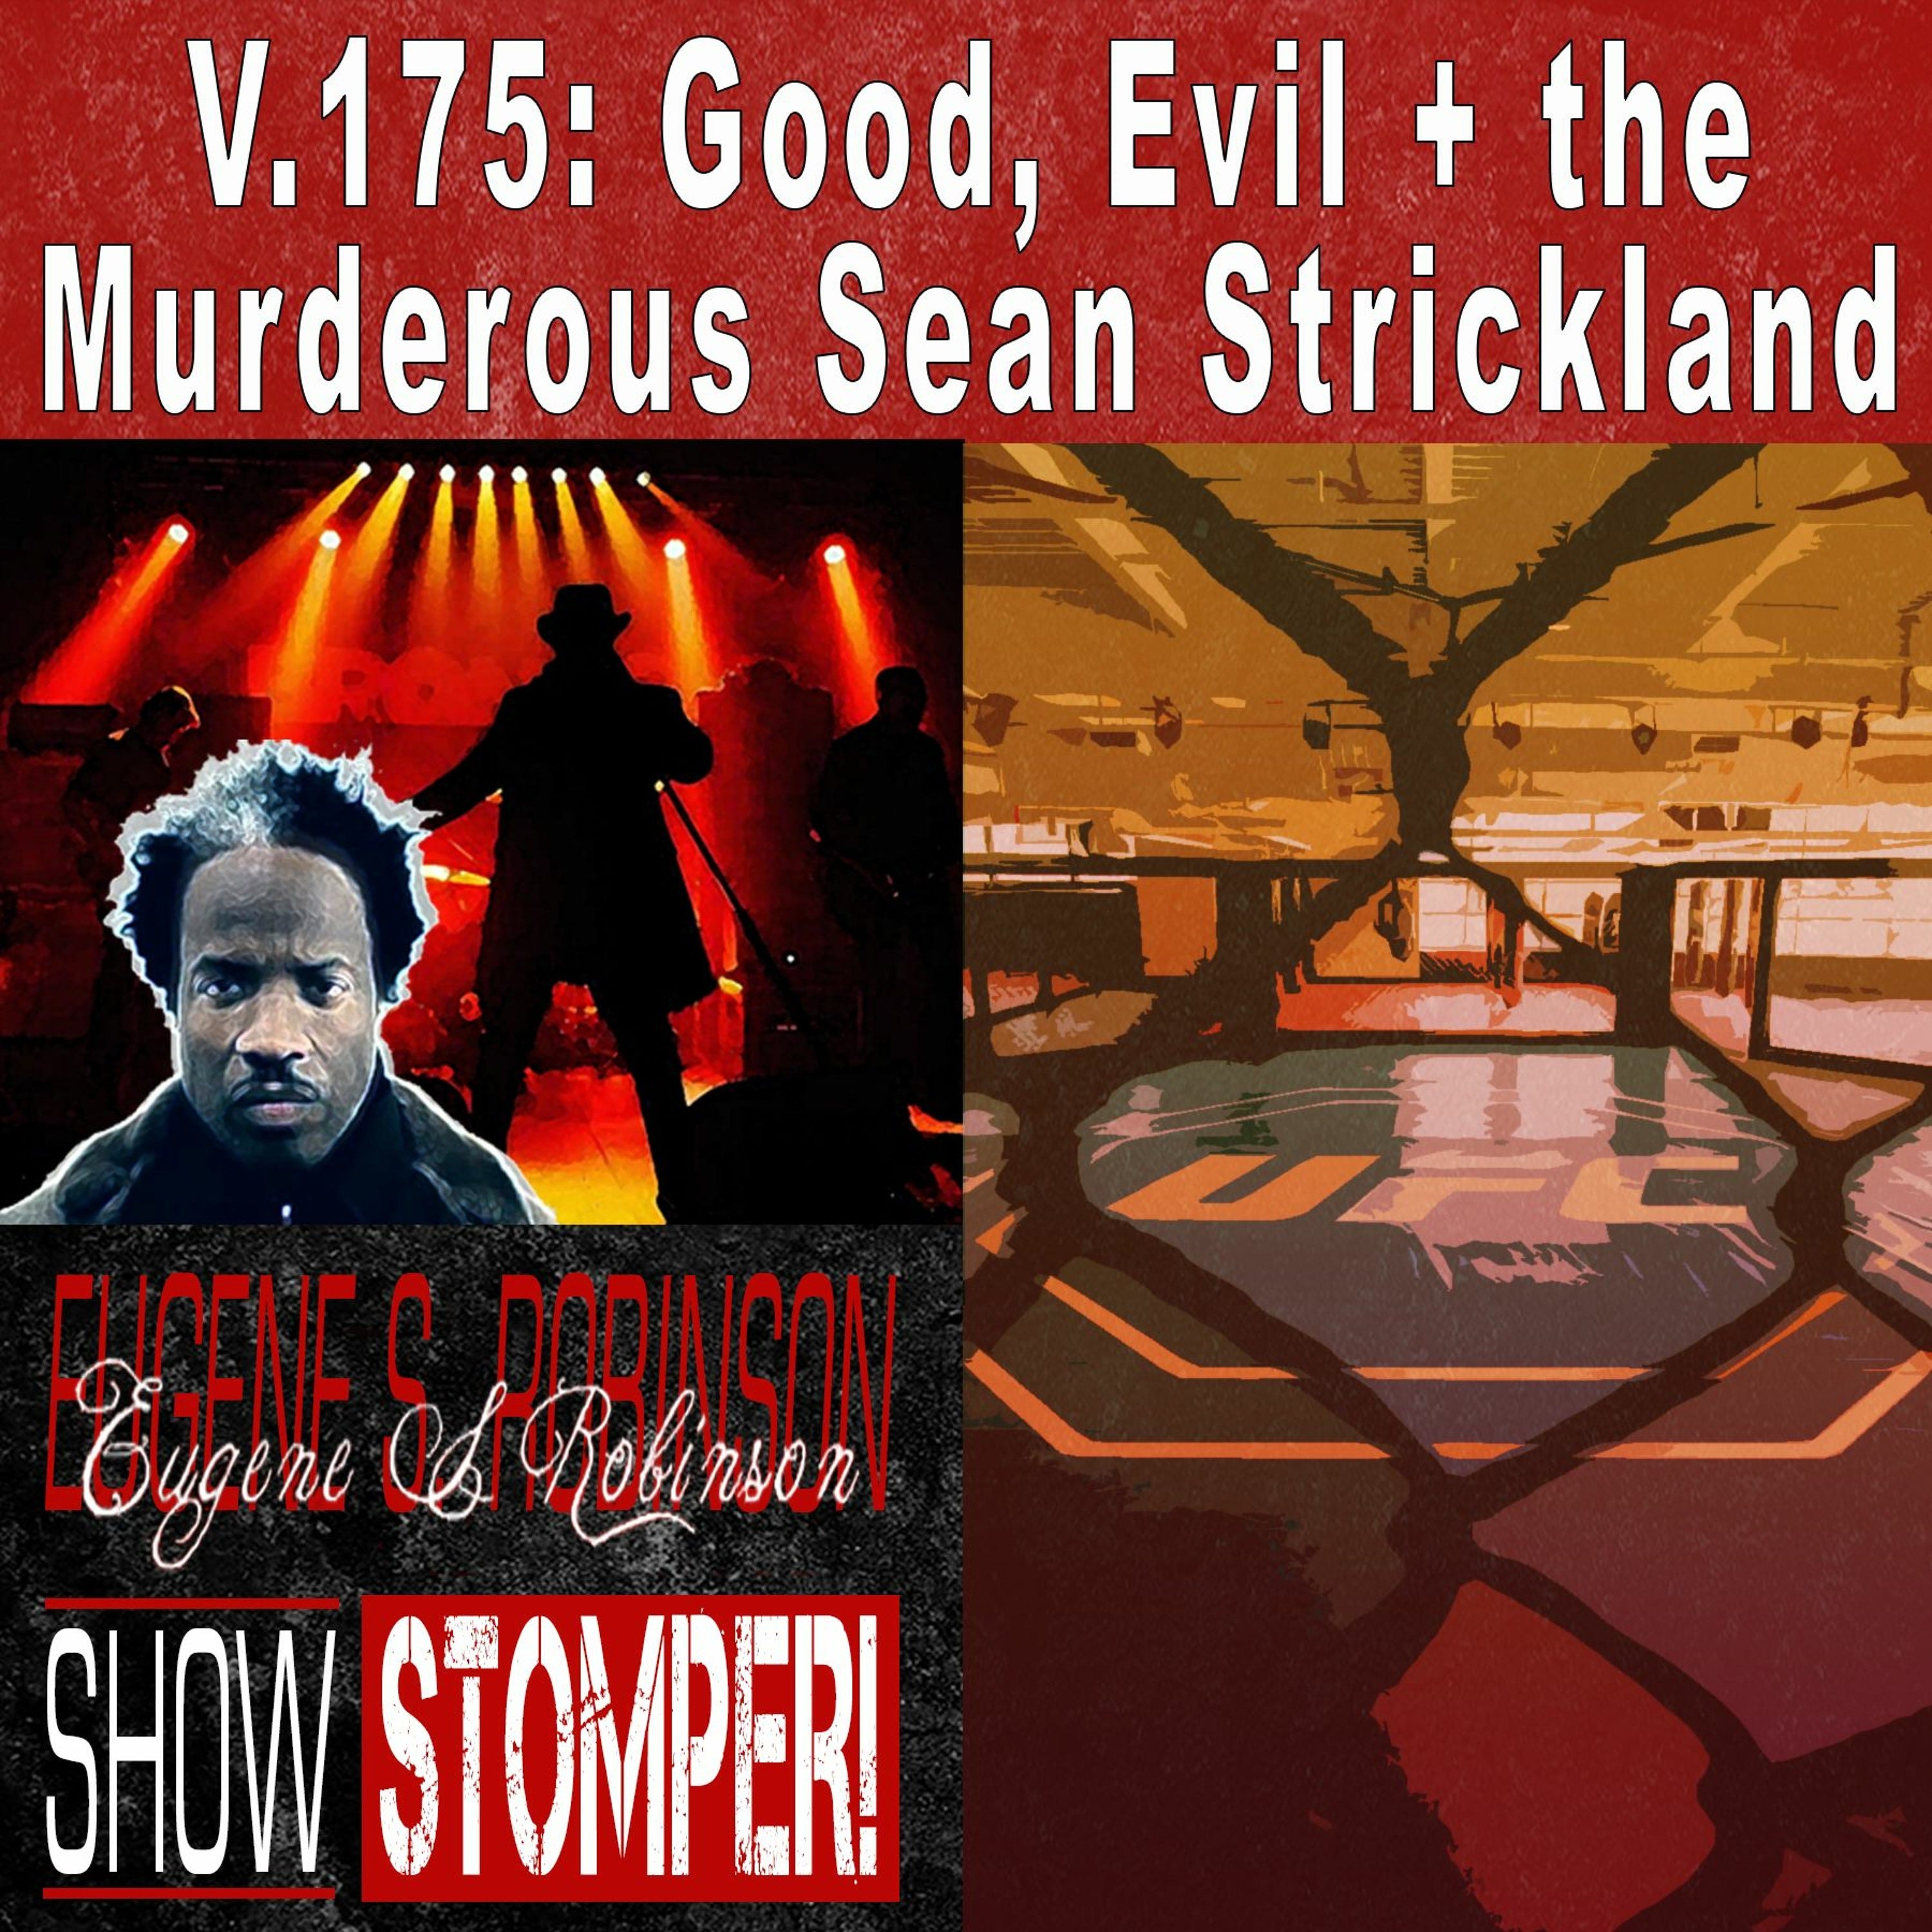 V.175 Good, Evil + The Murderous Sean Strickland On The Eugene S. Robinson Show Stomper!